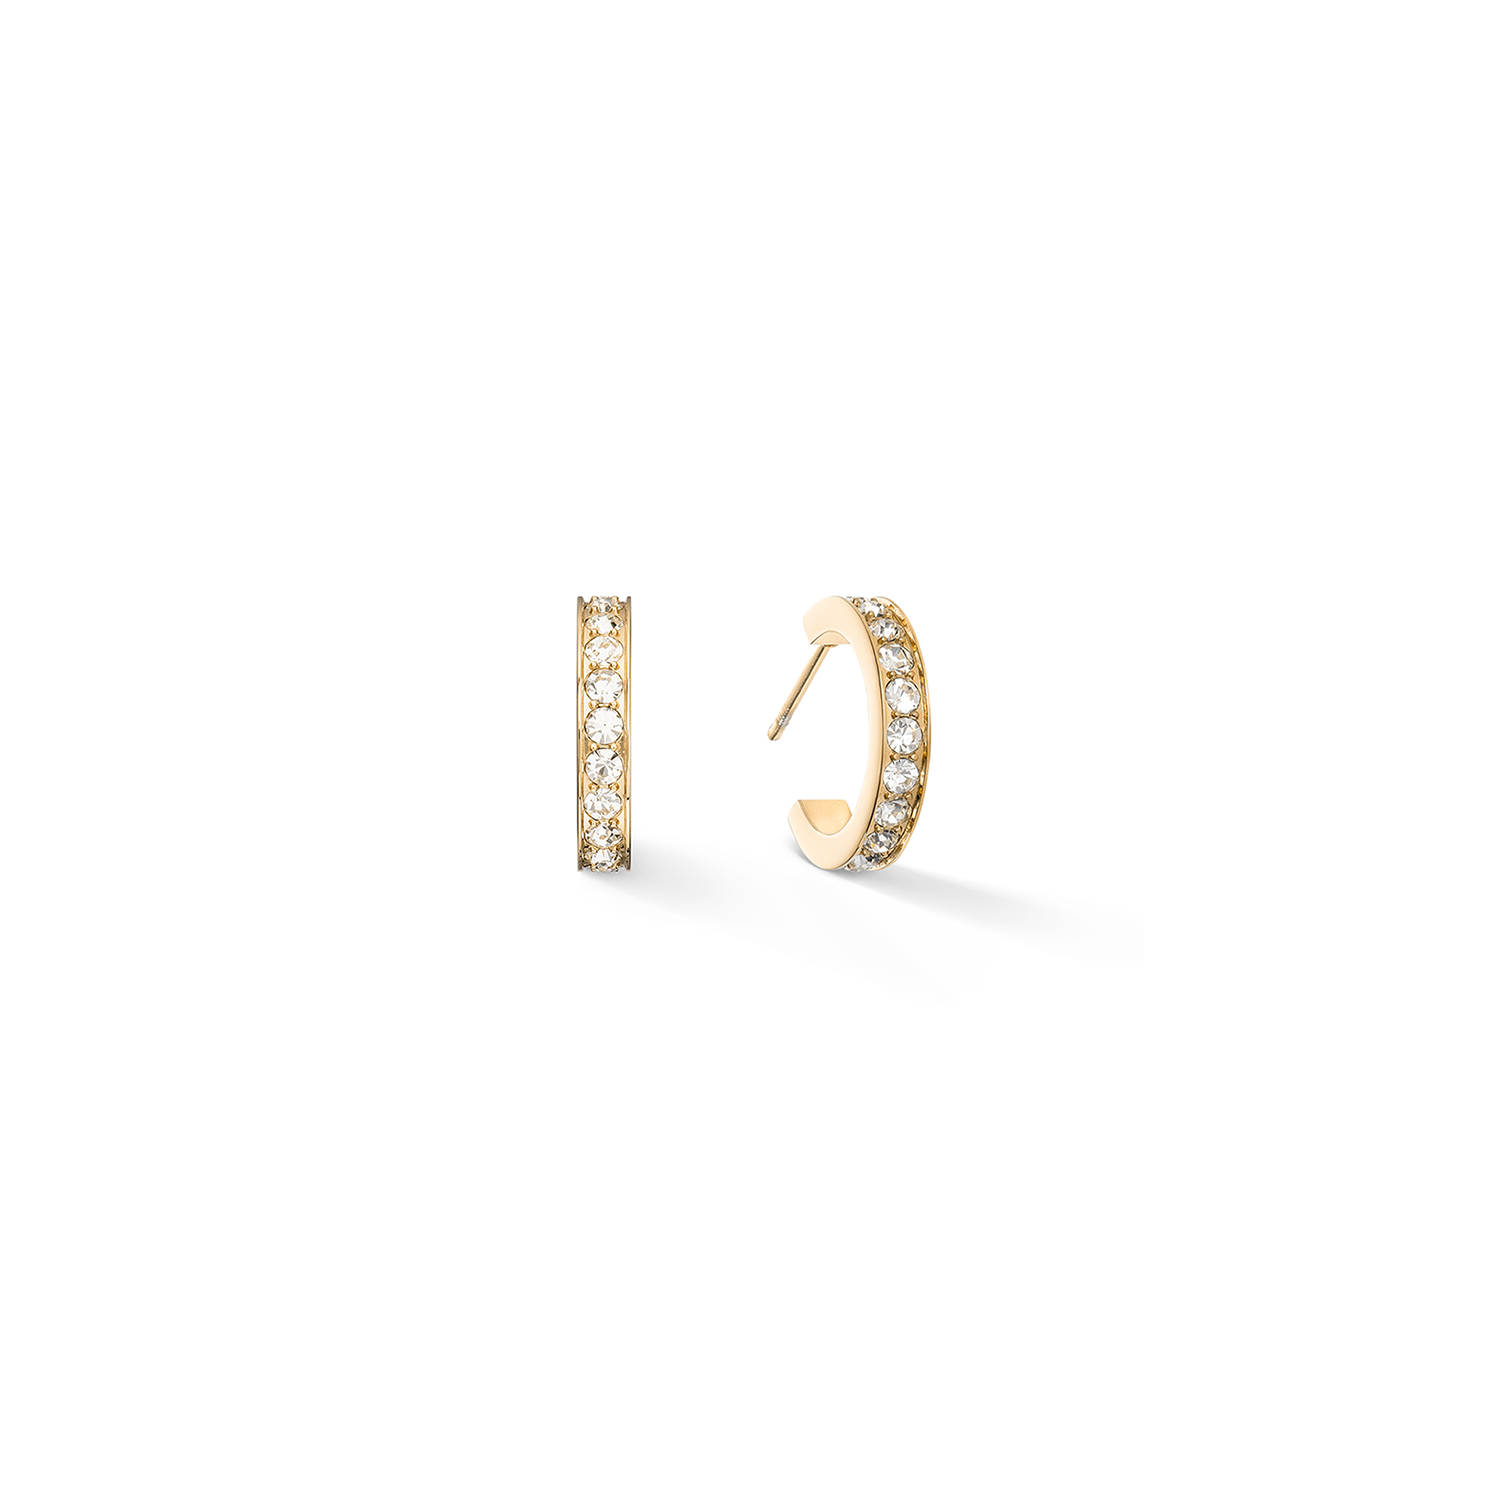 Hoop Wide Gold & Crystal Pavé Small Earrings 0127/21_1816